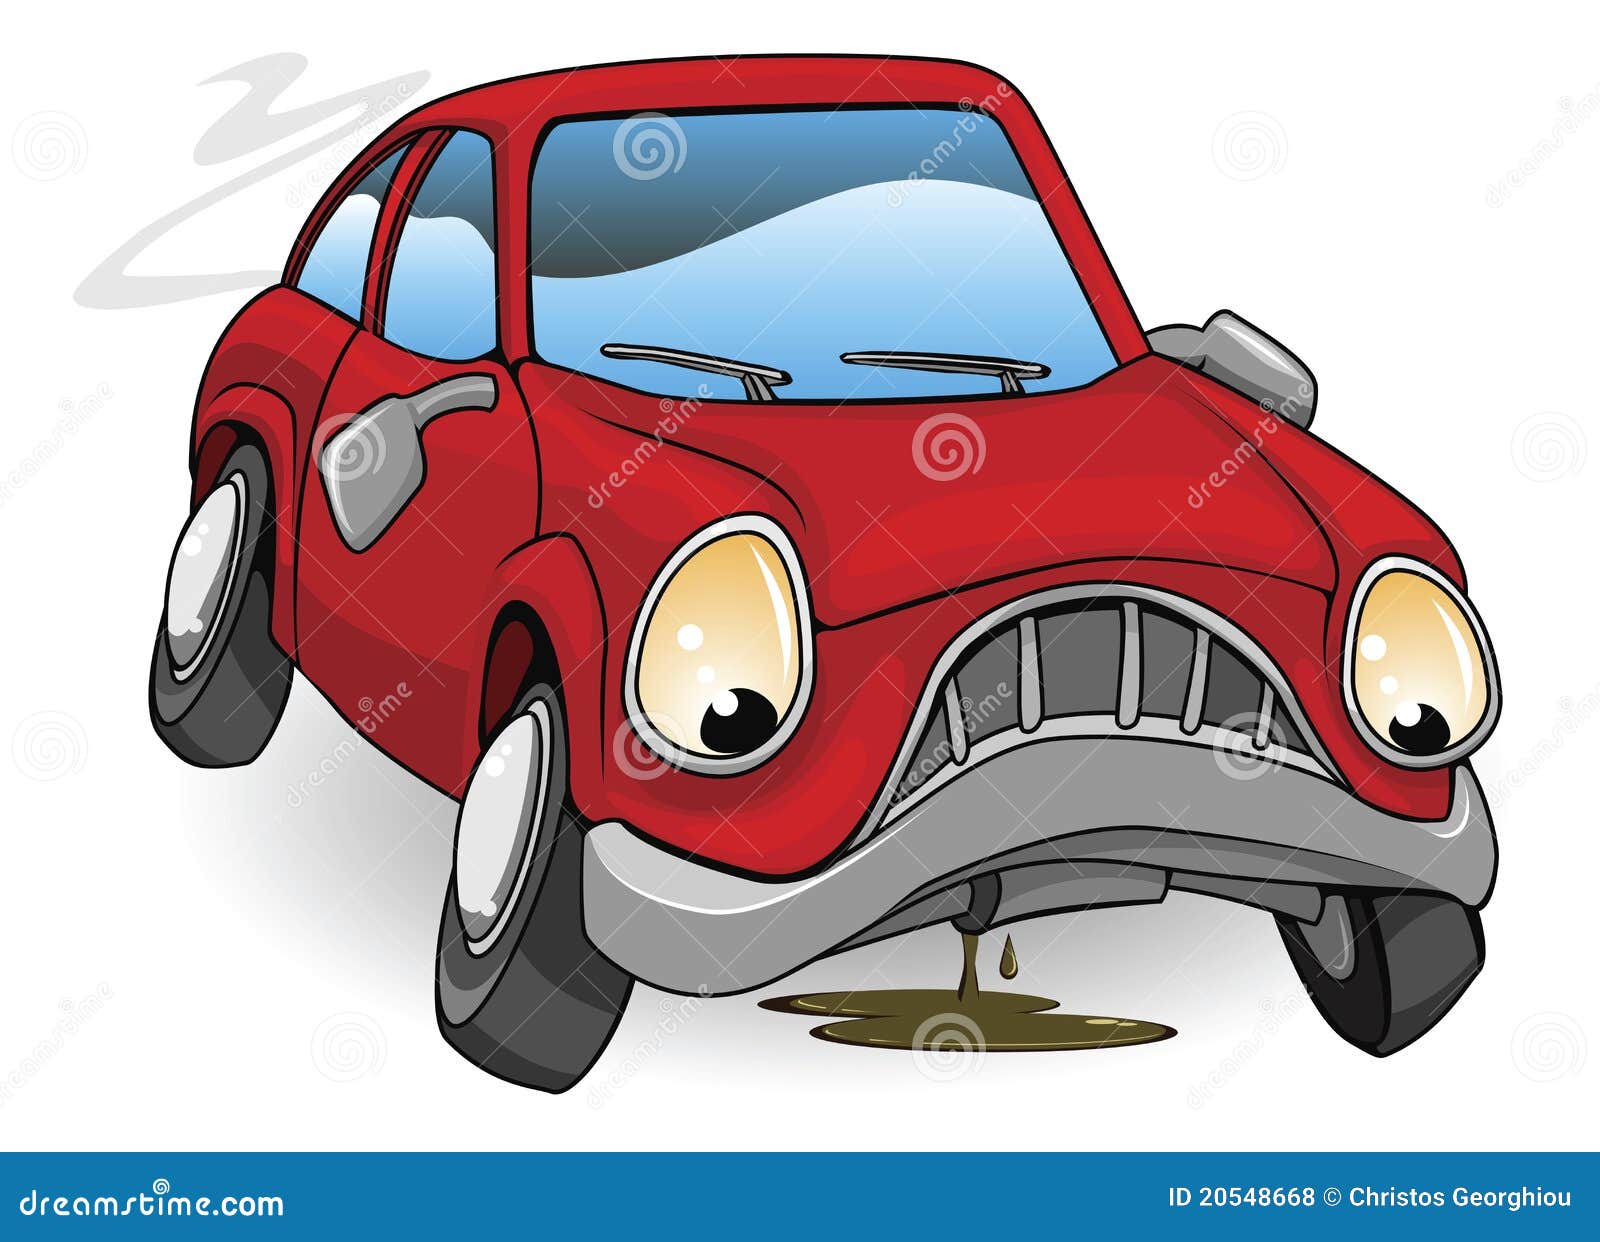 Sad Broken Down Cartoon Car Stock Vector Illustration Of Garage Clip 20548668